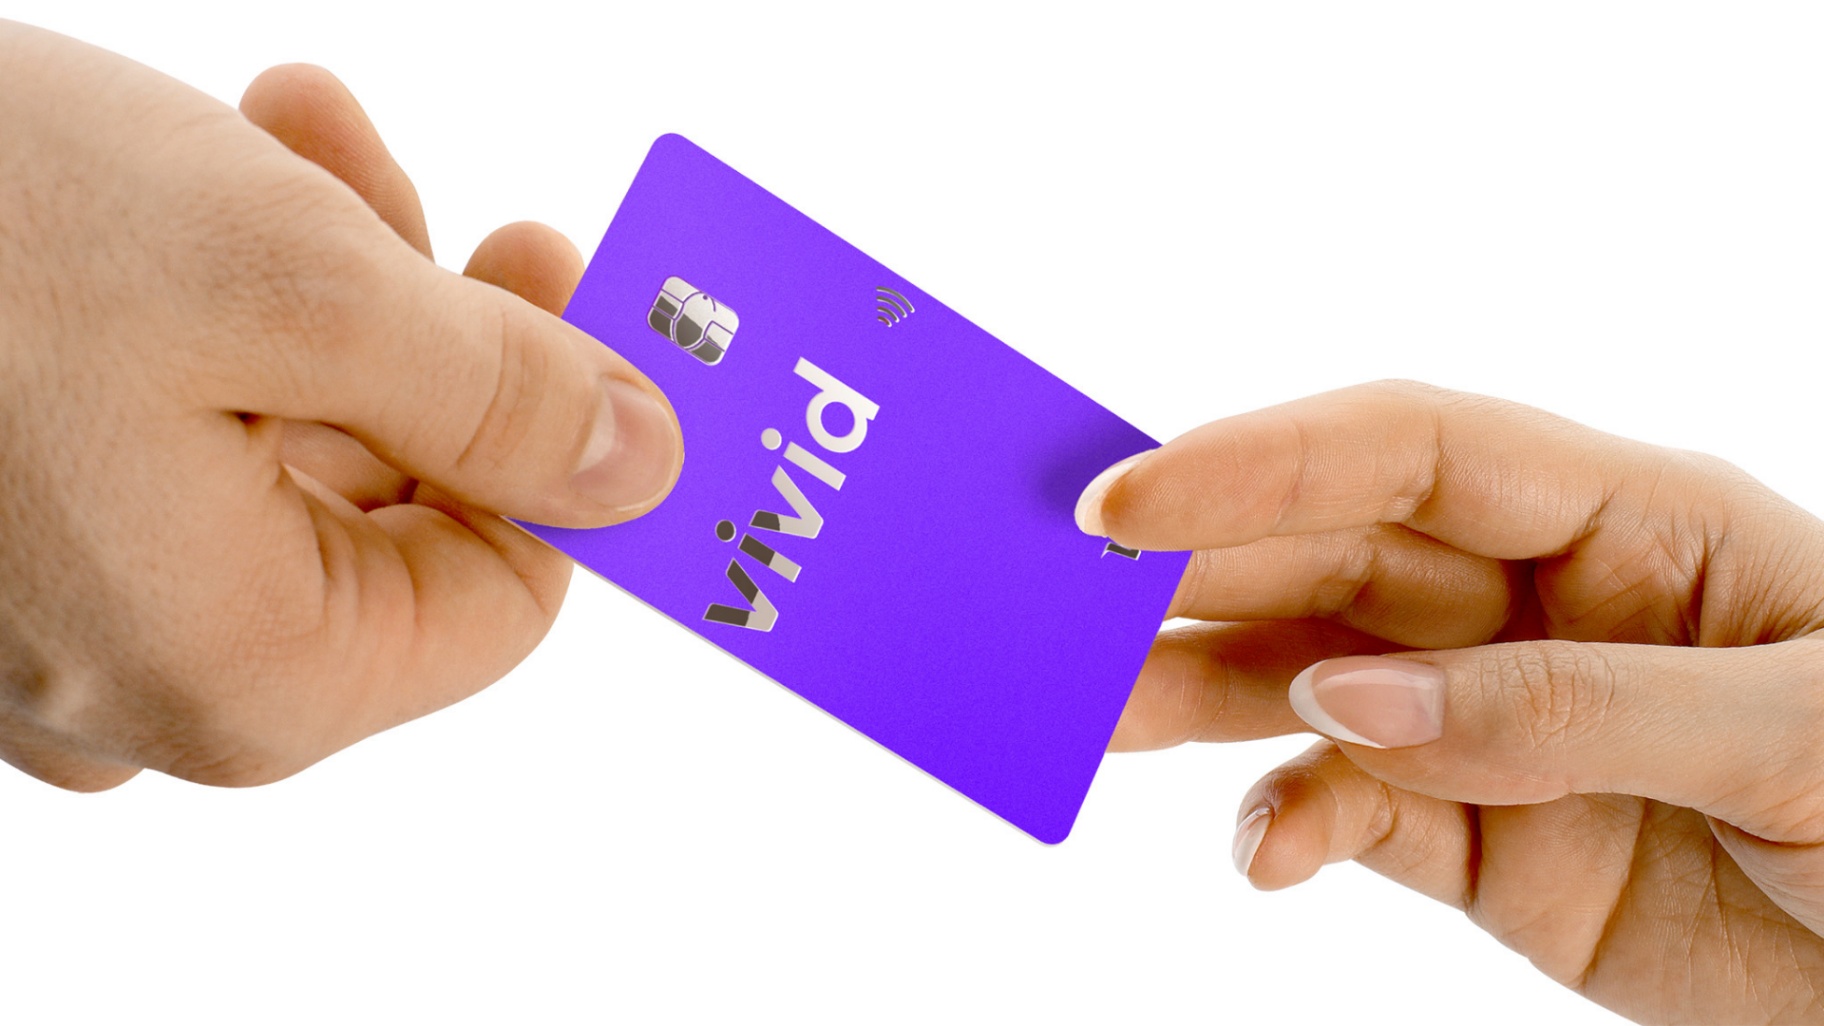 Vivid Money Visa Kreditkarte - Alle Infos Zu Den Konditionen & Zur Beantragung